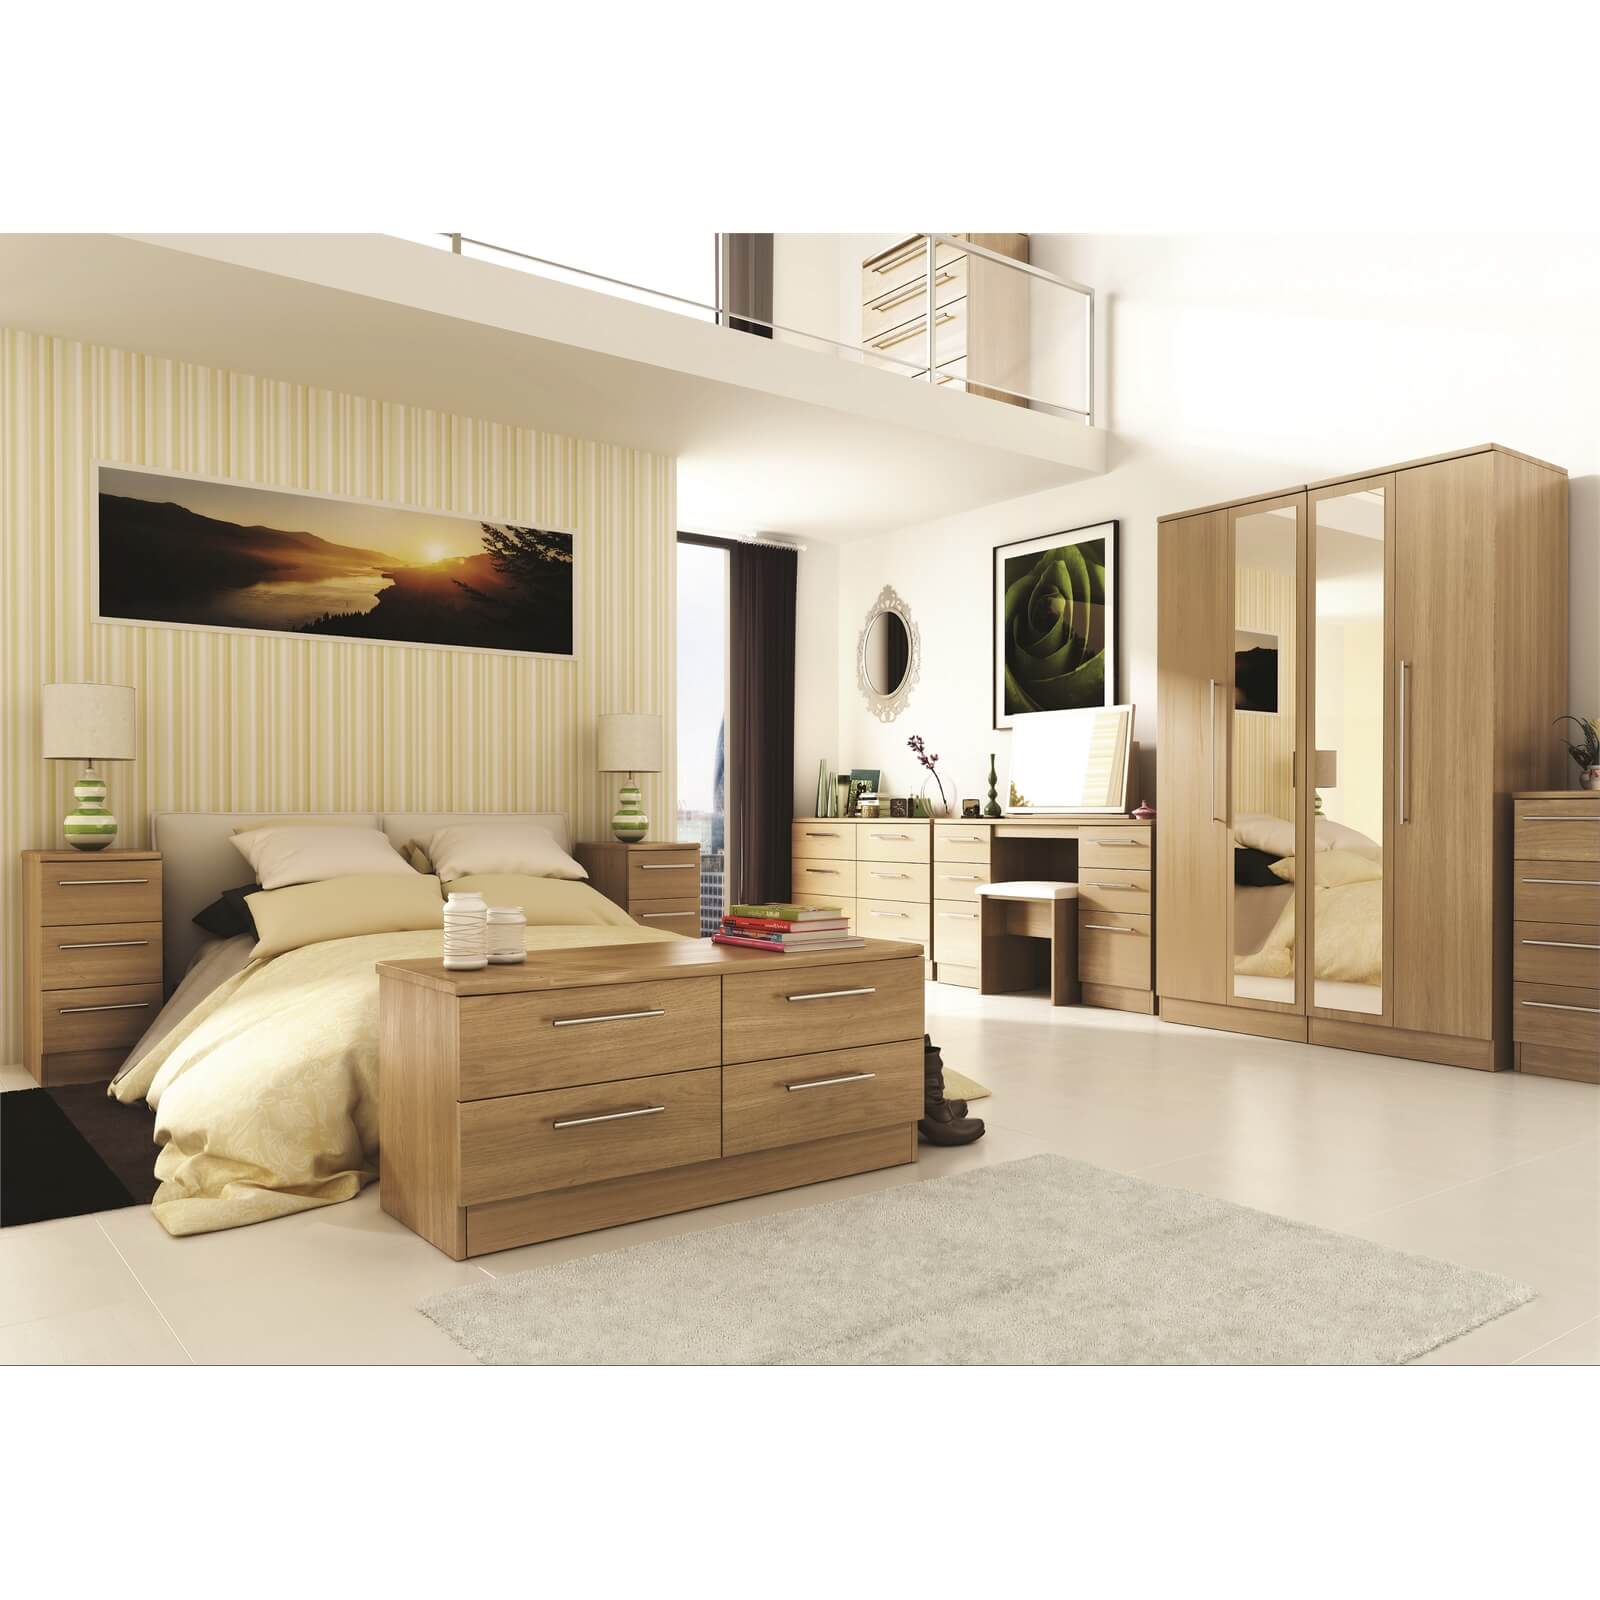 Siena Modern Oak 3 Drawer Bedside Cabinet